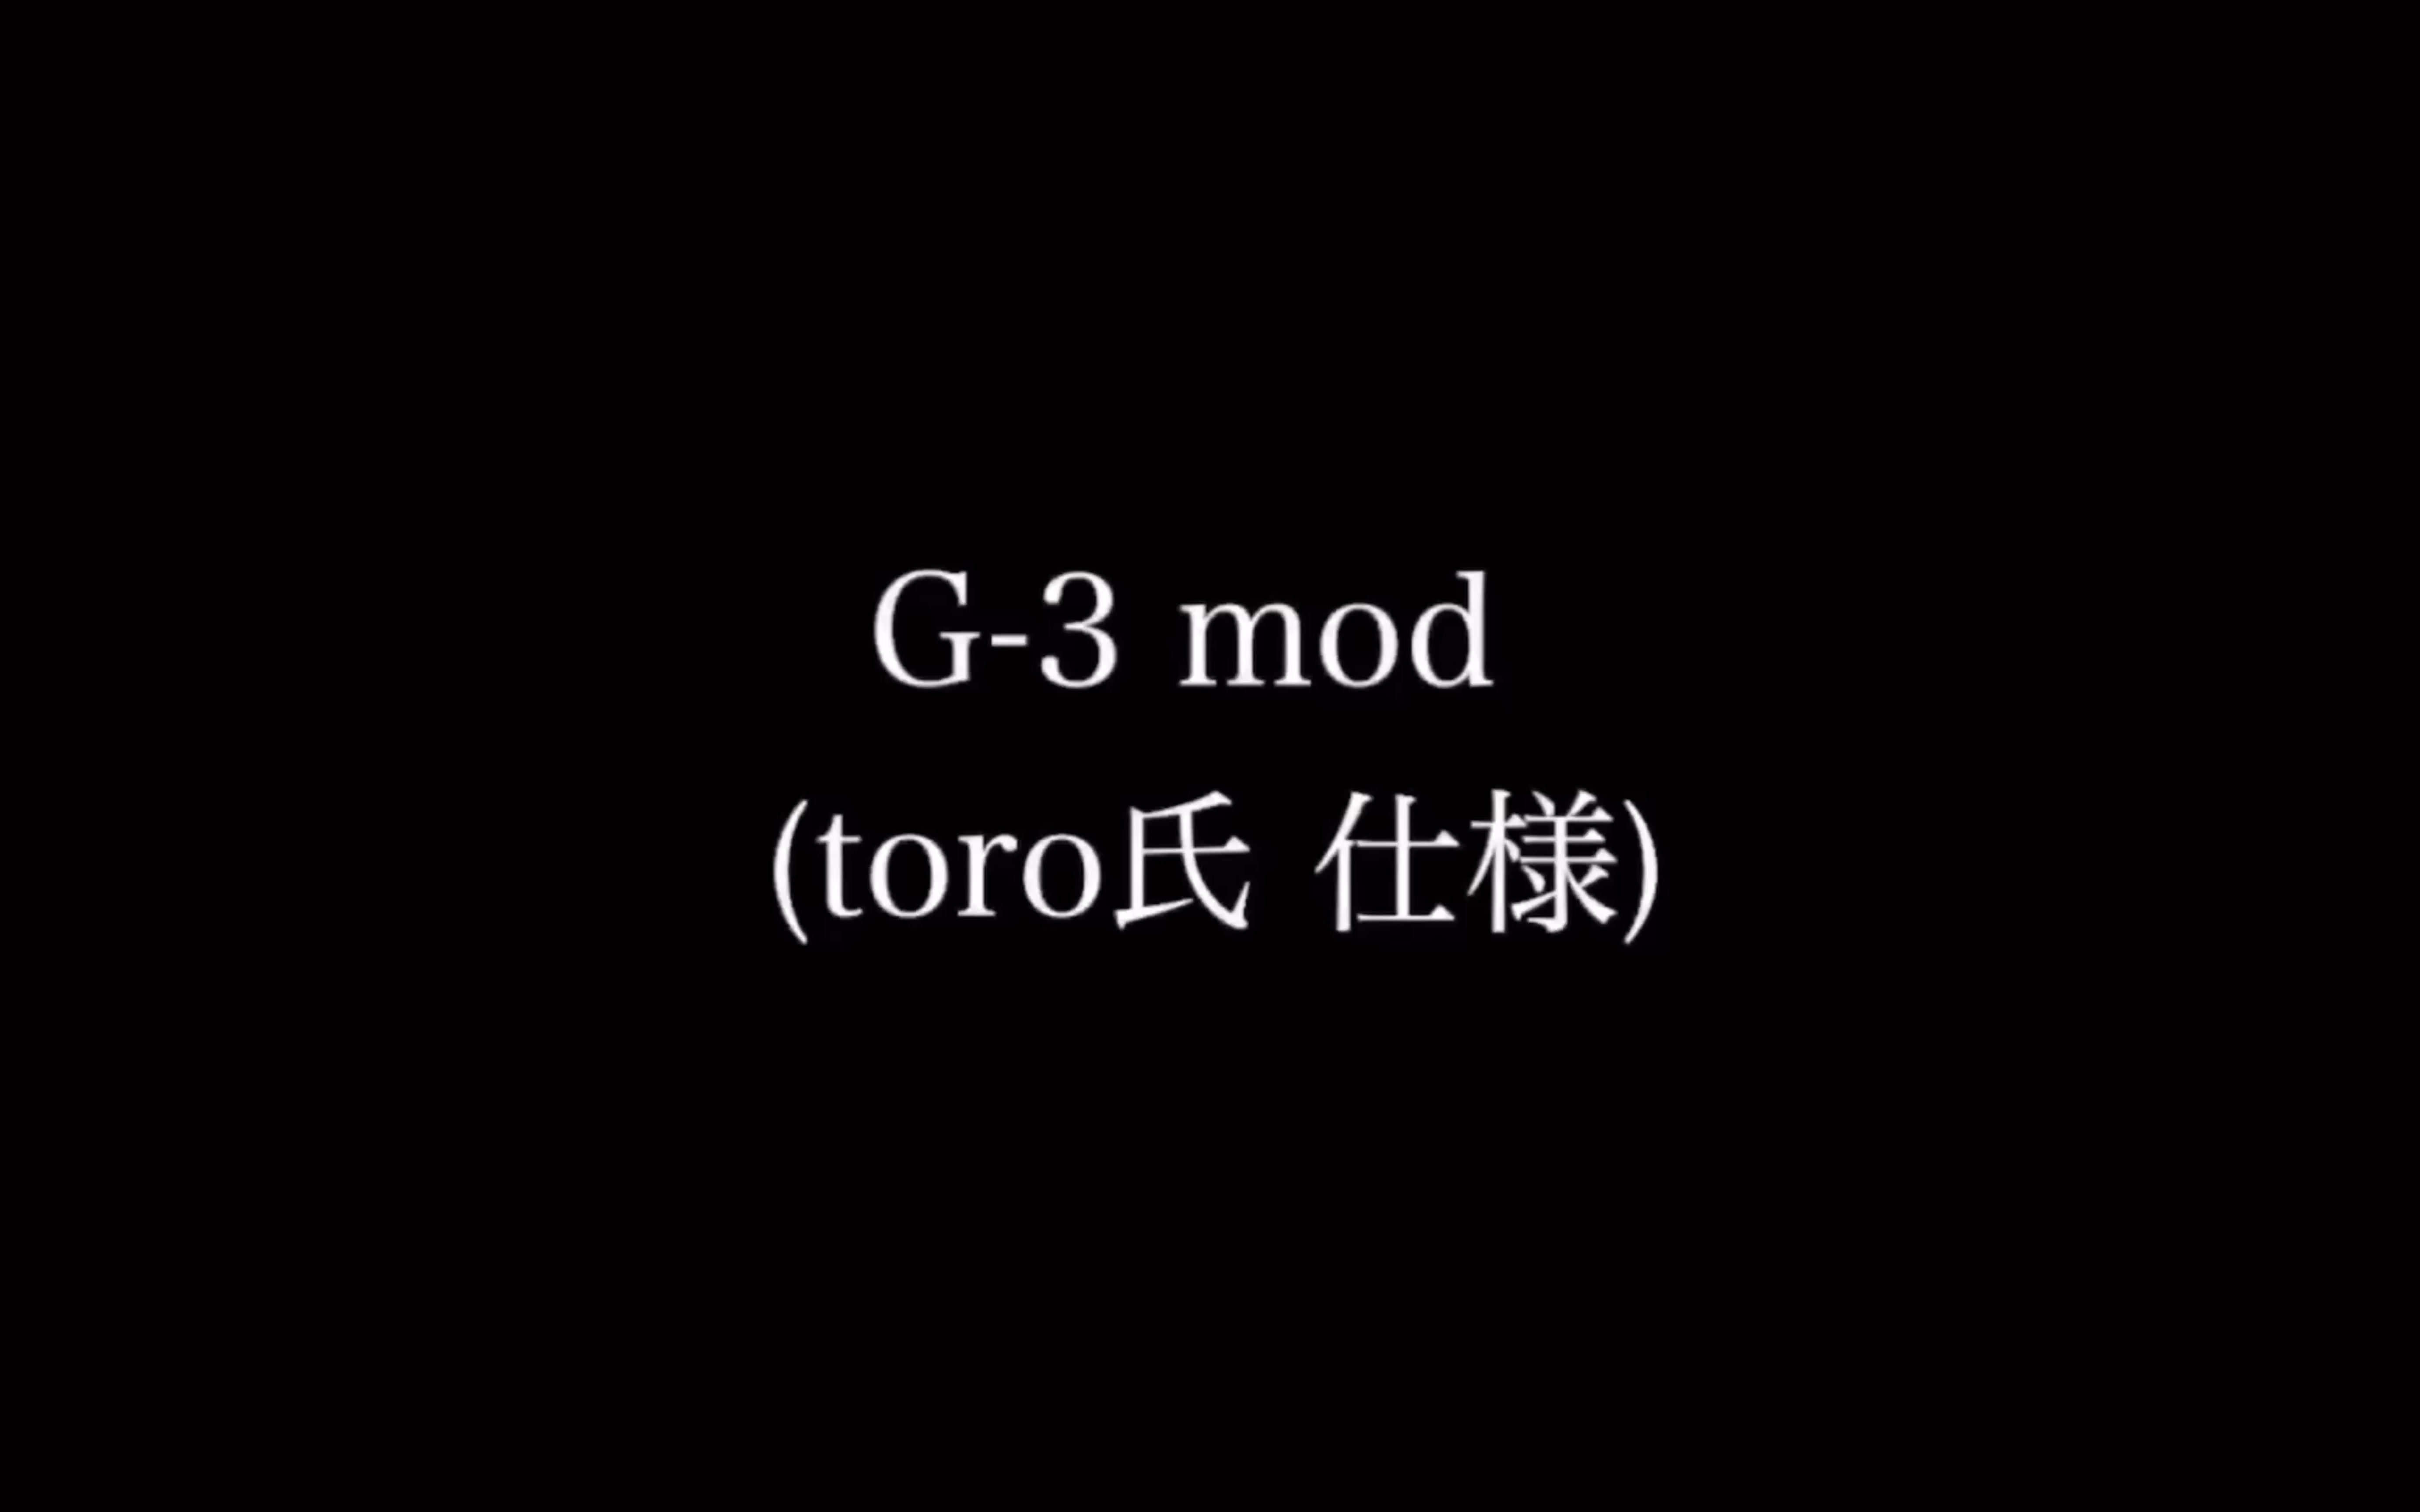 超特価セール Menowa*氏 旧G3 Menowa*氏 旧G3 mod mod - doutou-sc.co.jp